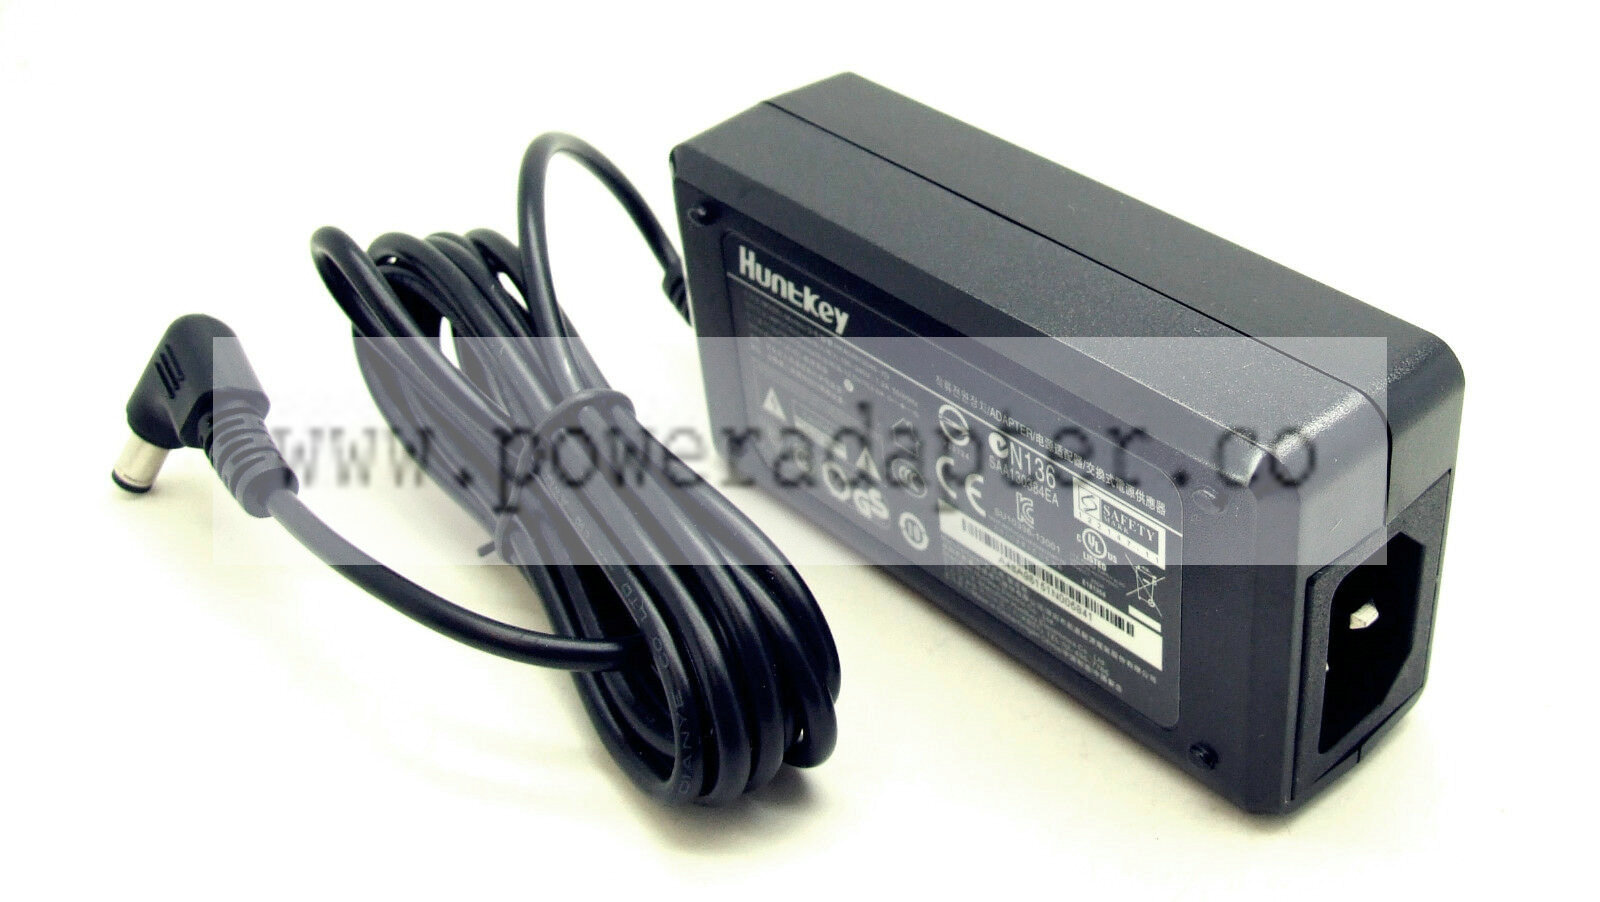 Original Huntkey AC Adapter 12V 4A for Tp-Link Archer C2600 HKA04812040-7D Product Description Original Huntkey Powe